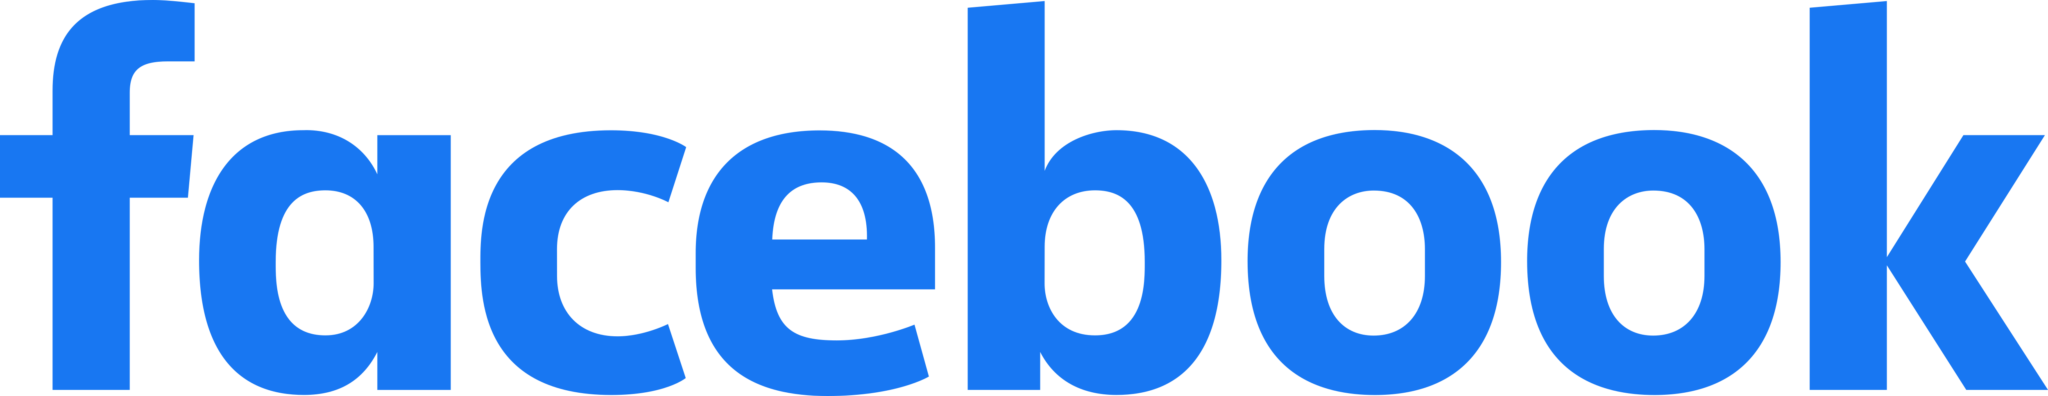 Facebook Logo 2019 2048x396 